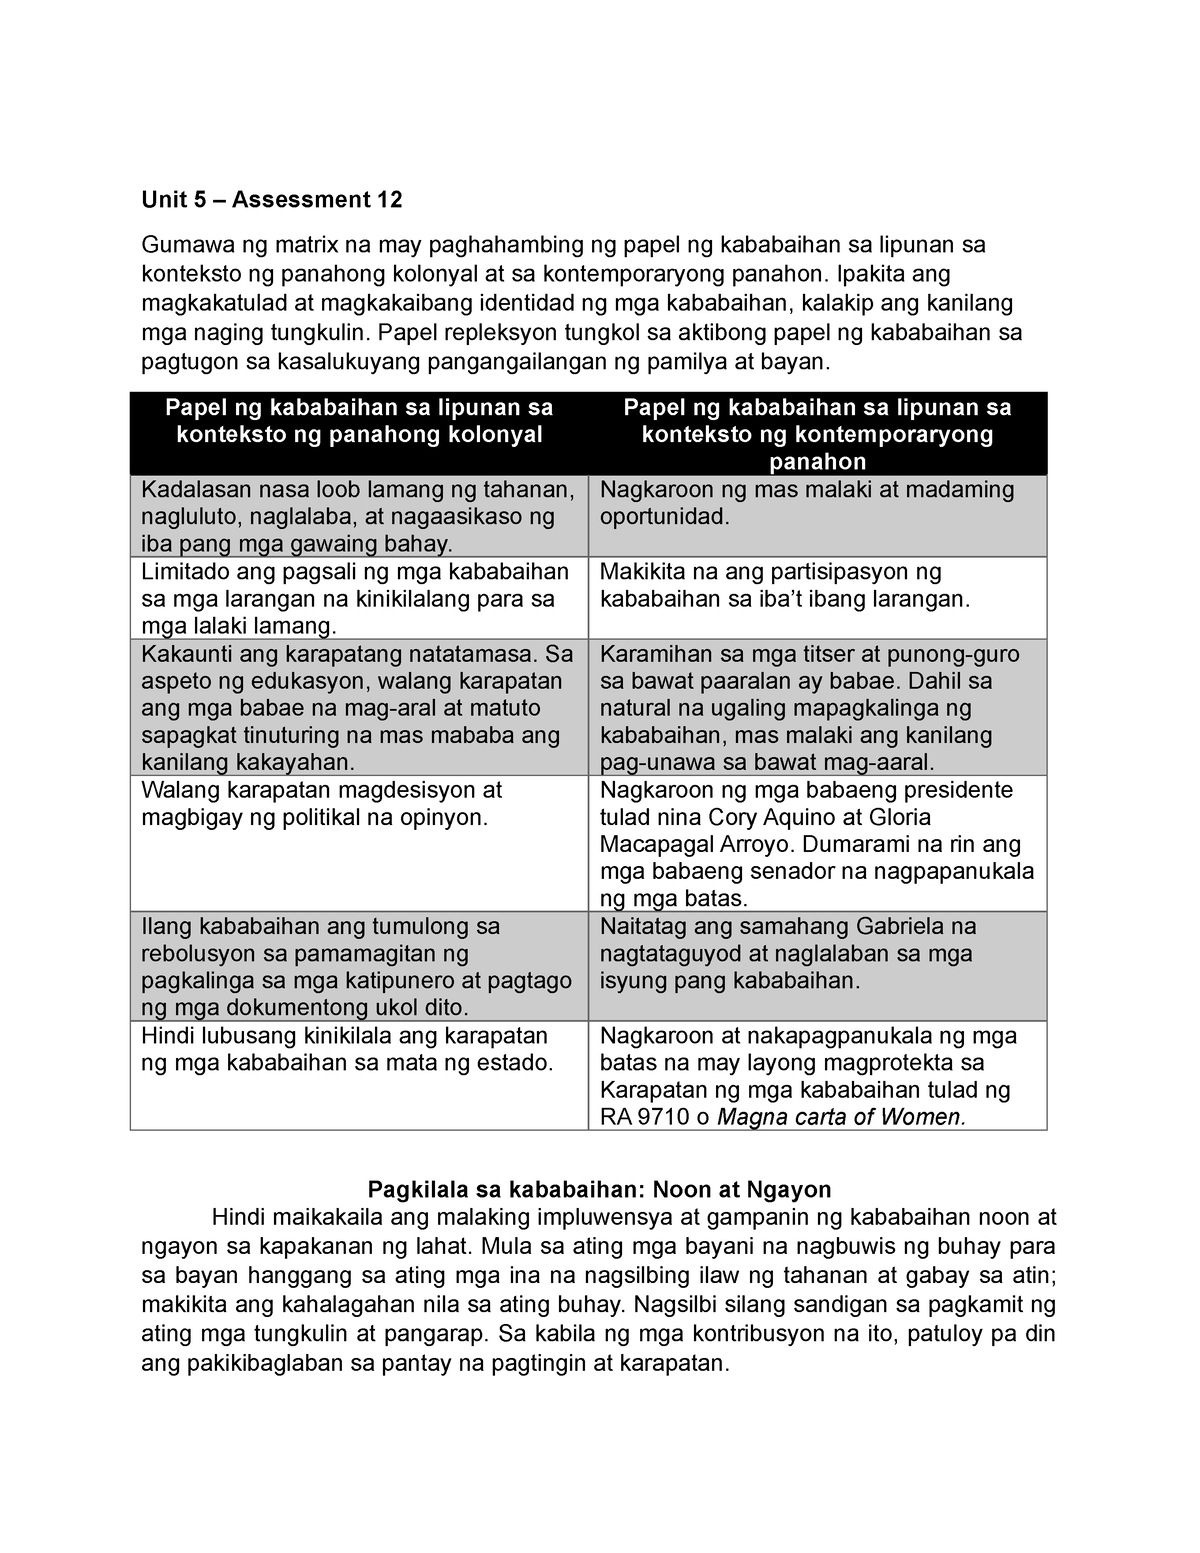 Unit 5 - Lecture Notes - Unit 5 – Assessment 12 Gumawa ng matrix na may